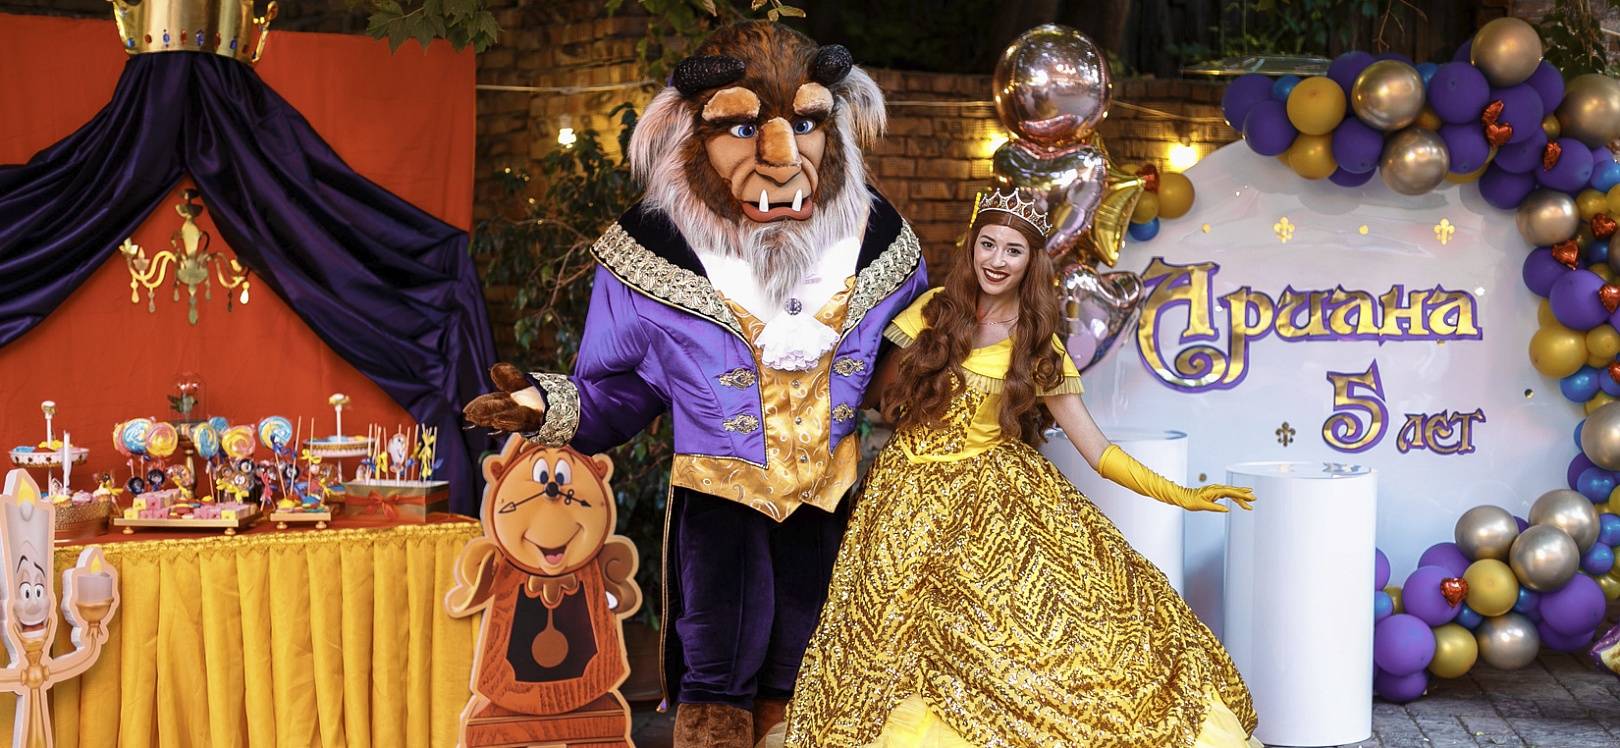 Аниматор красавица принцесса белль и принц чудовище на детский праздник, день рождения ребенка - шоу театр студия art - happy.